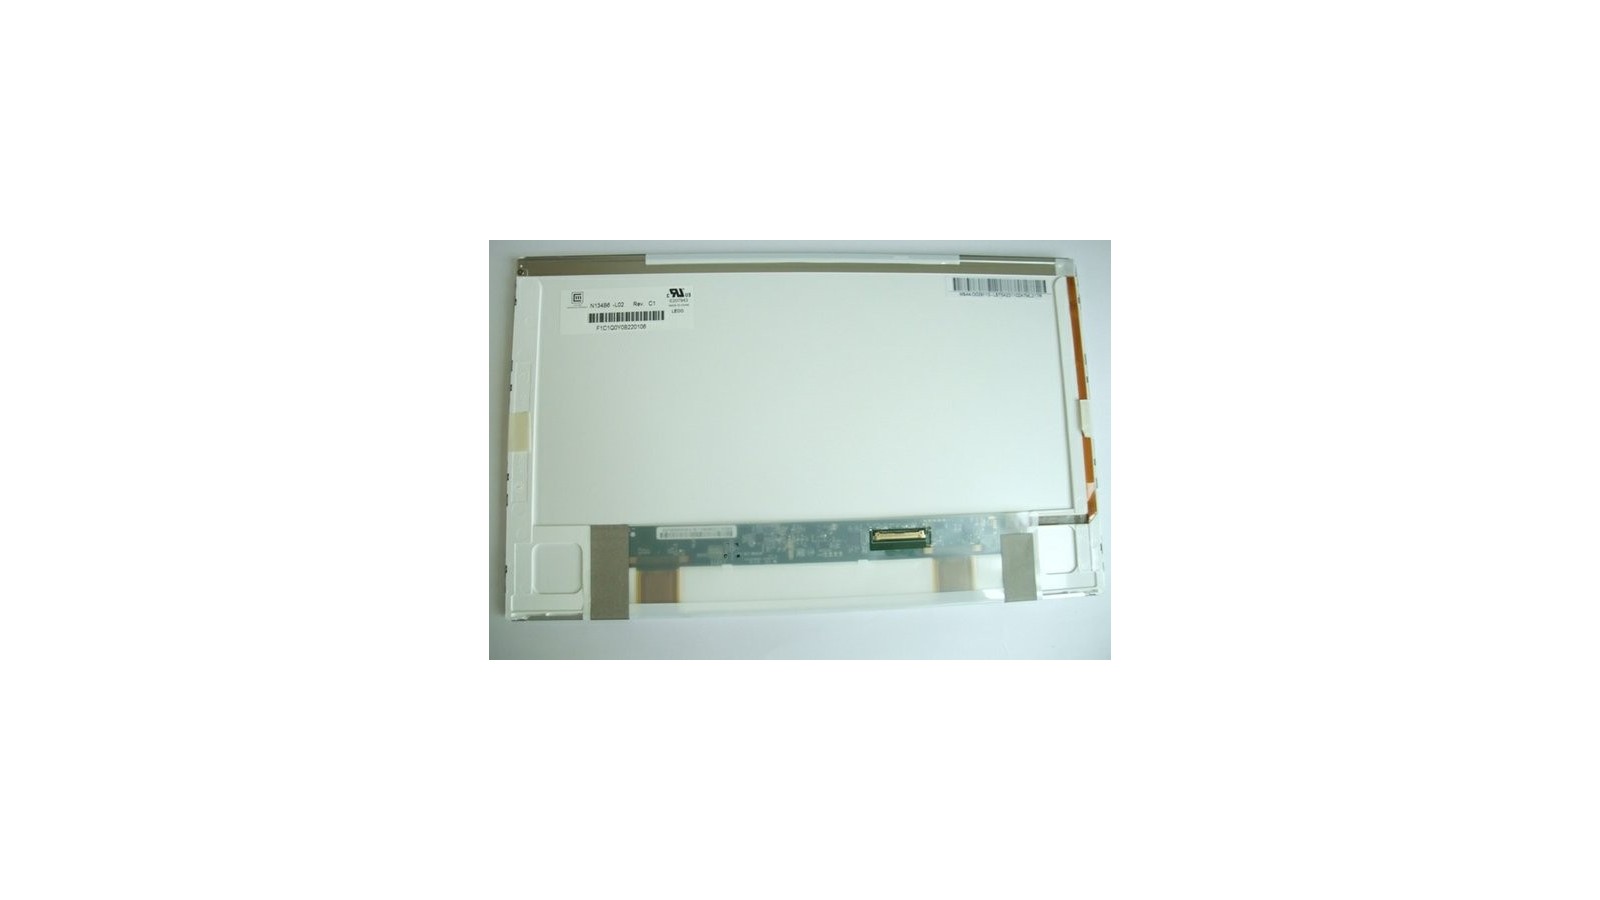 Display LCD Schermo 13,4 Led compatibile con Hp Pavilion DV3-2000